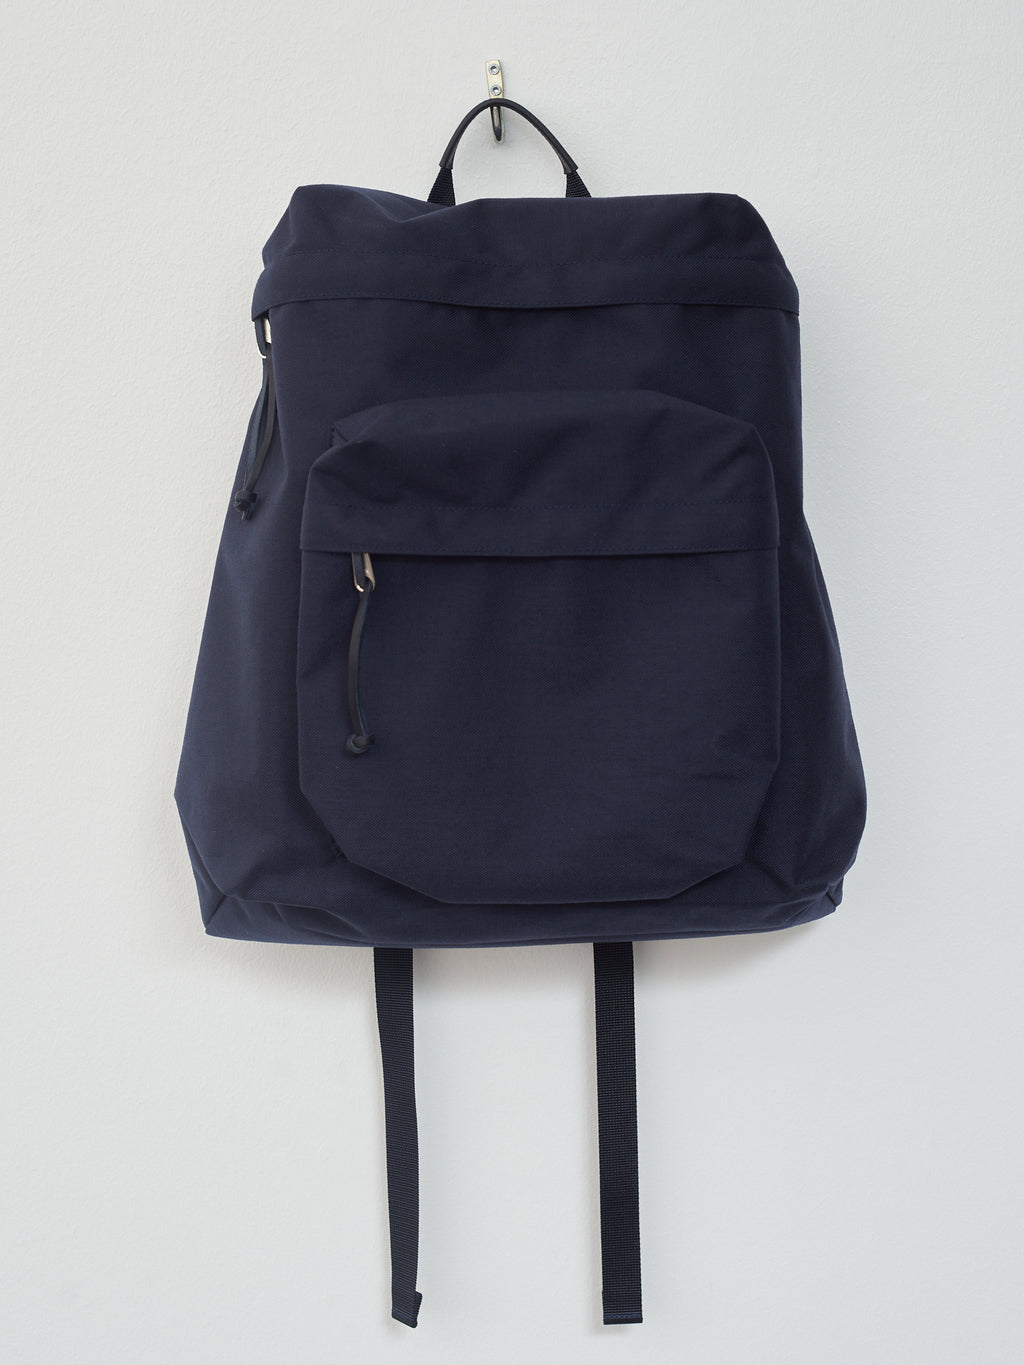 Namu Shop - Aeta Backpack TF M - Navy